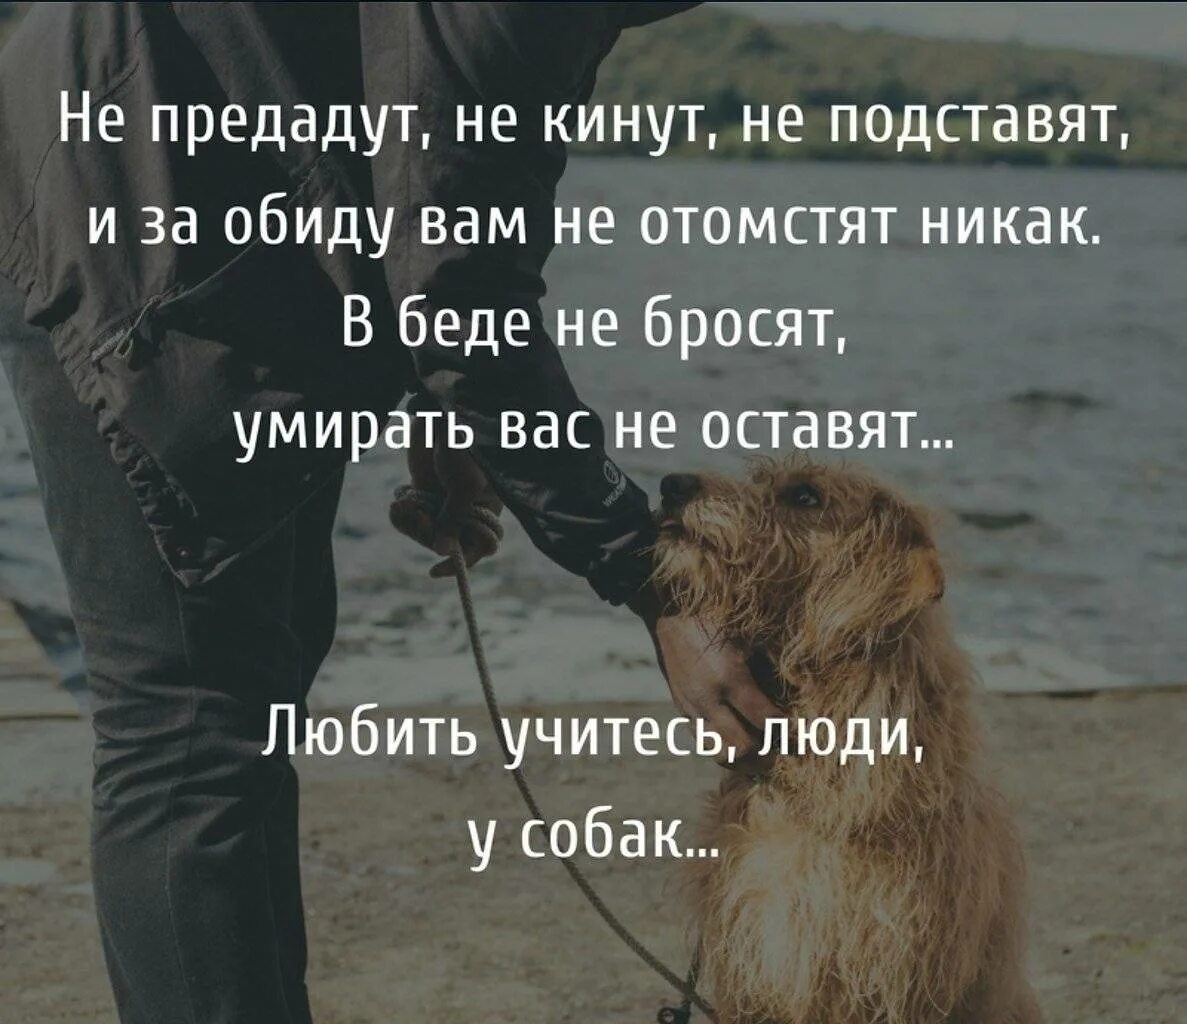 Смелый всегда найдет. Цитаты про собак. Афоризмы про собак и людей. Собака и человек цитаты. Любите животных цитаты.